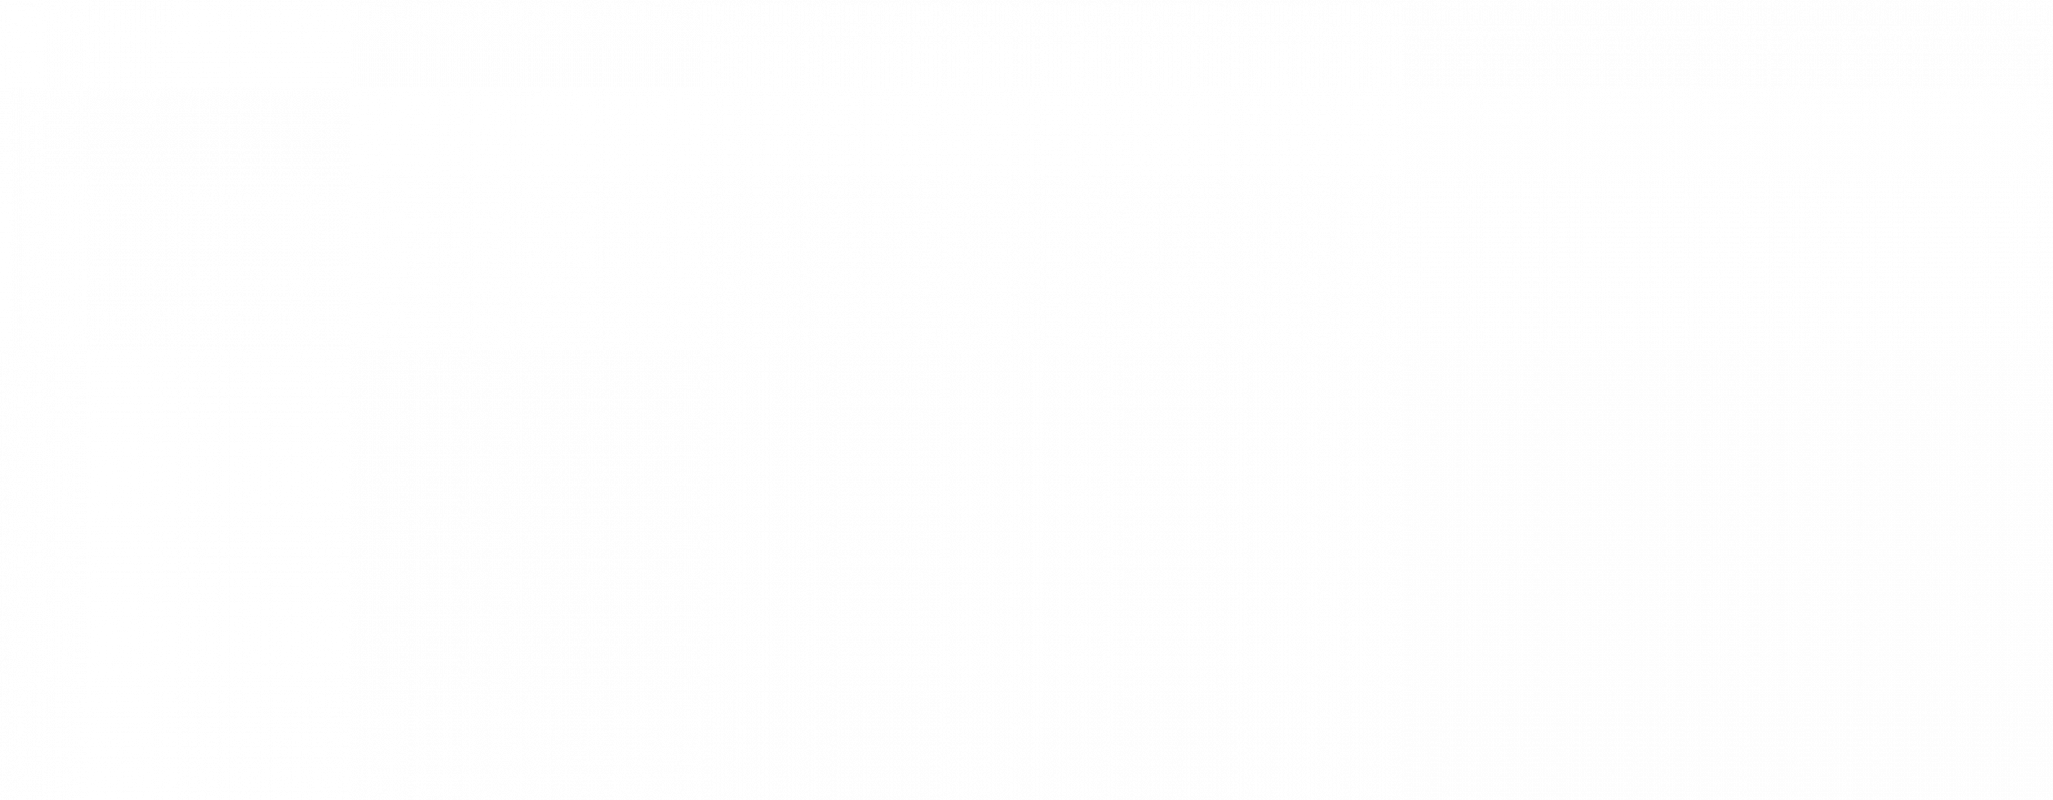 logo-klaxoon-noir-png